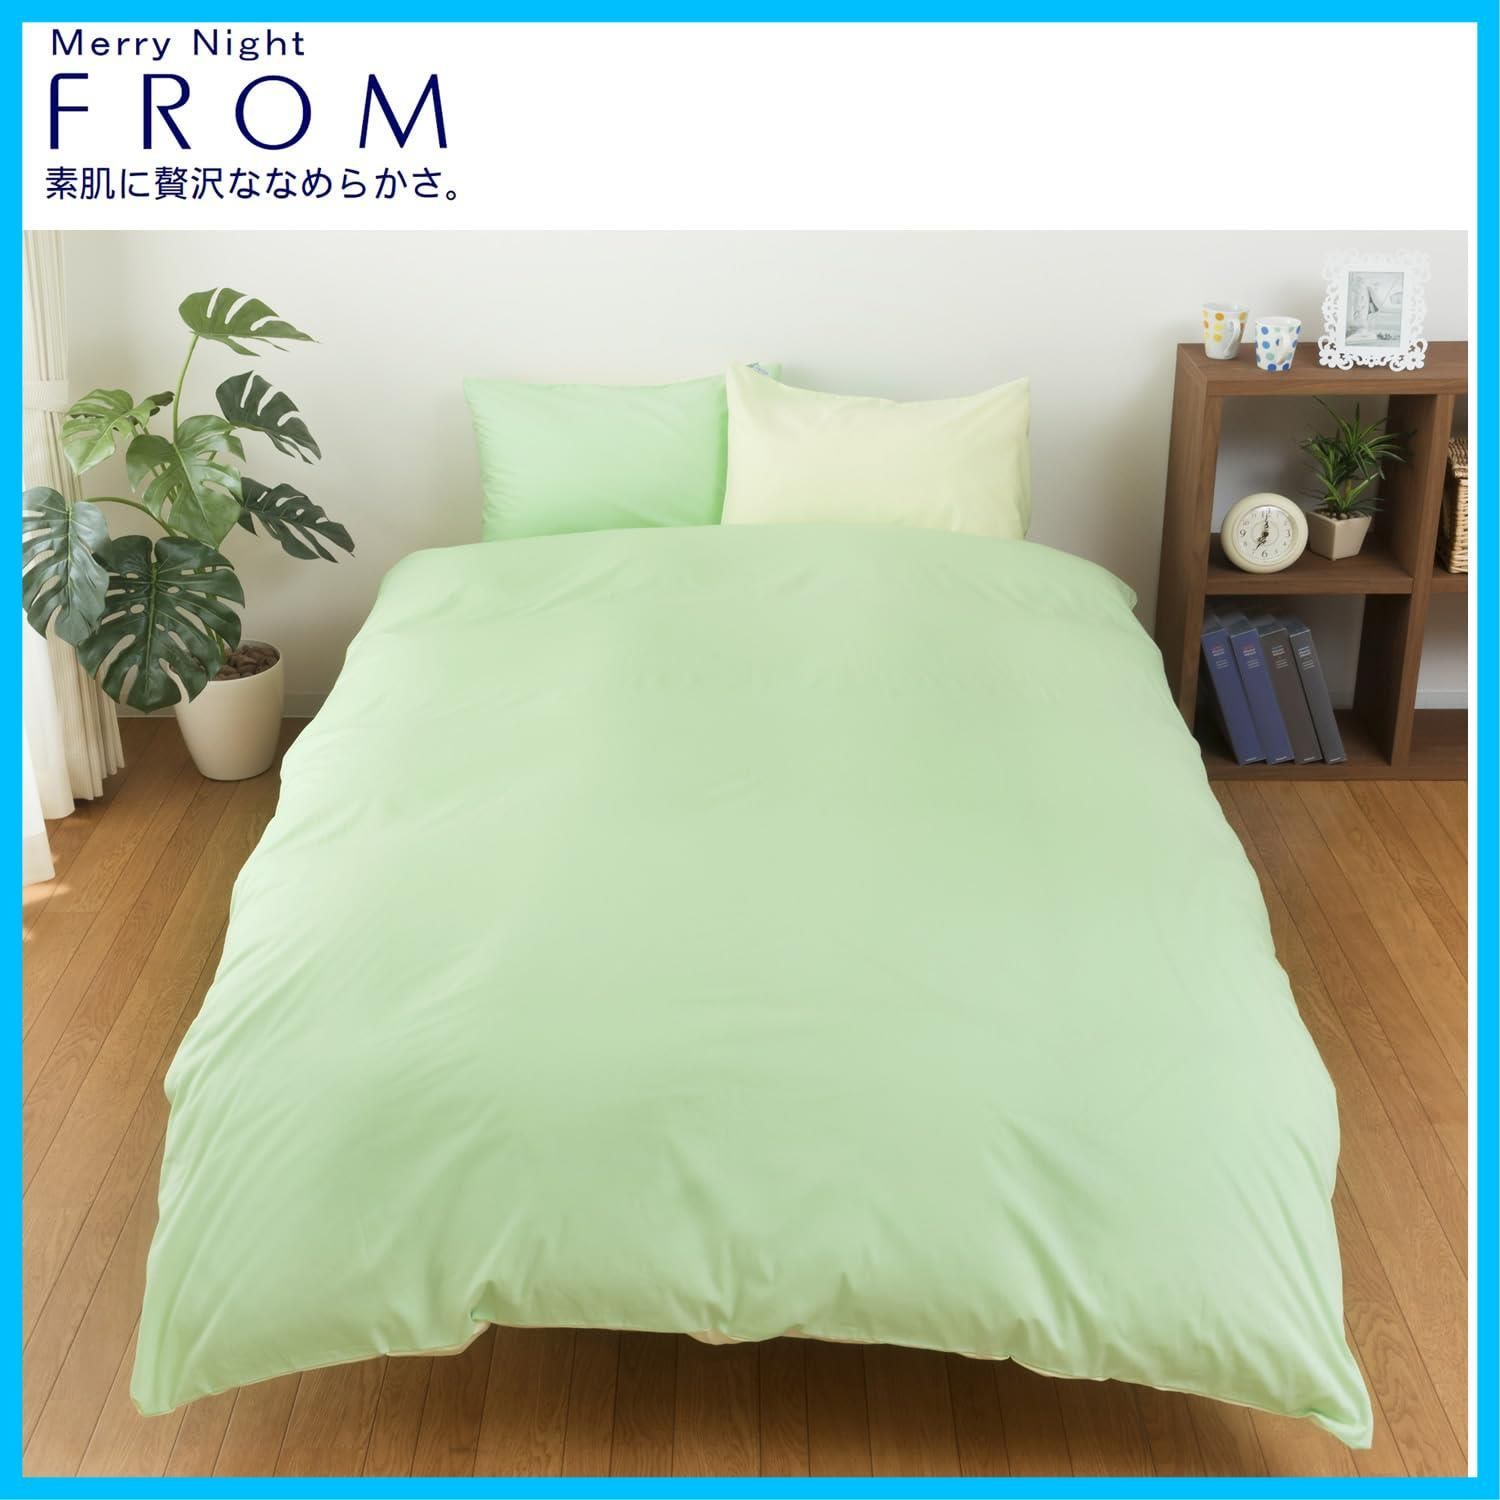 メリーナイト 枕カバー FROM (フロム) グリーン 約45×90cm (枕サイズ43 